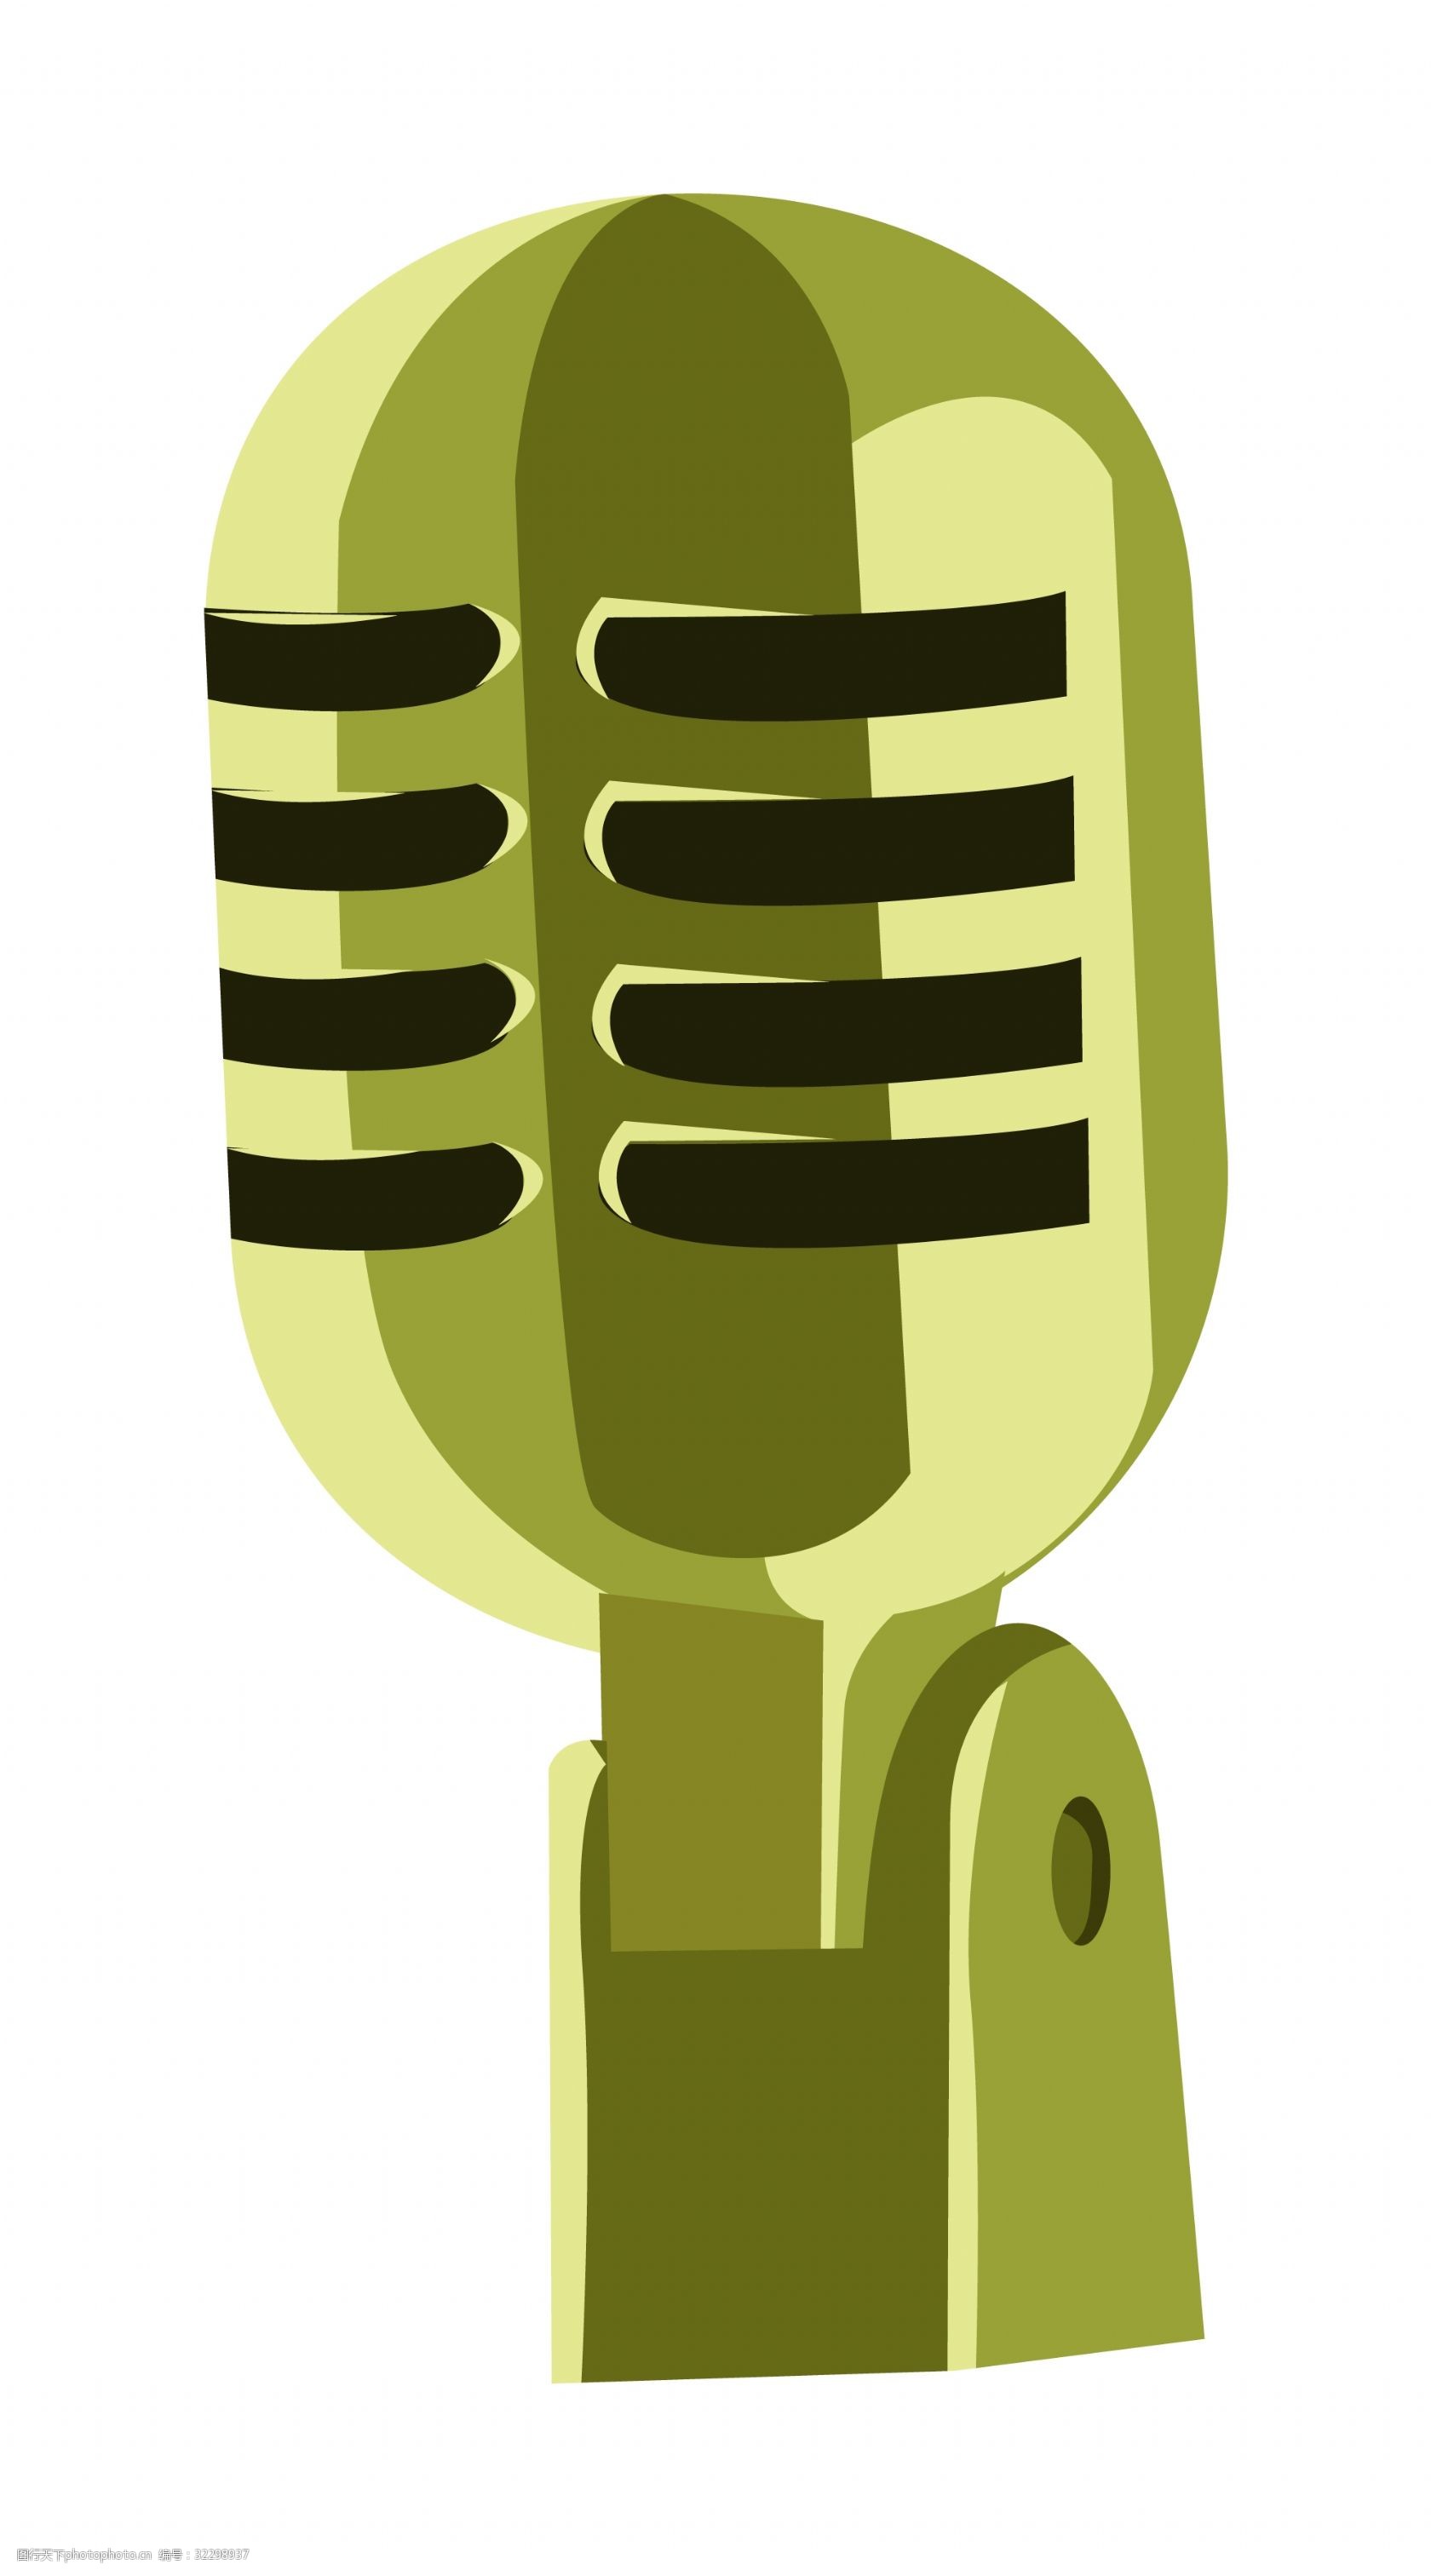 关键词:绿色的话筒手绘插画 绿色的话筒 讲话话筒 精美话筒 卡通话筒